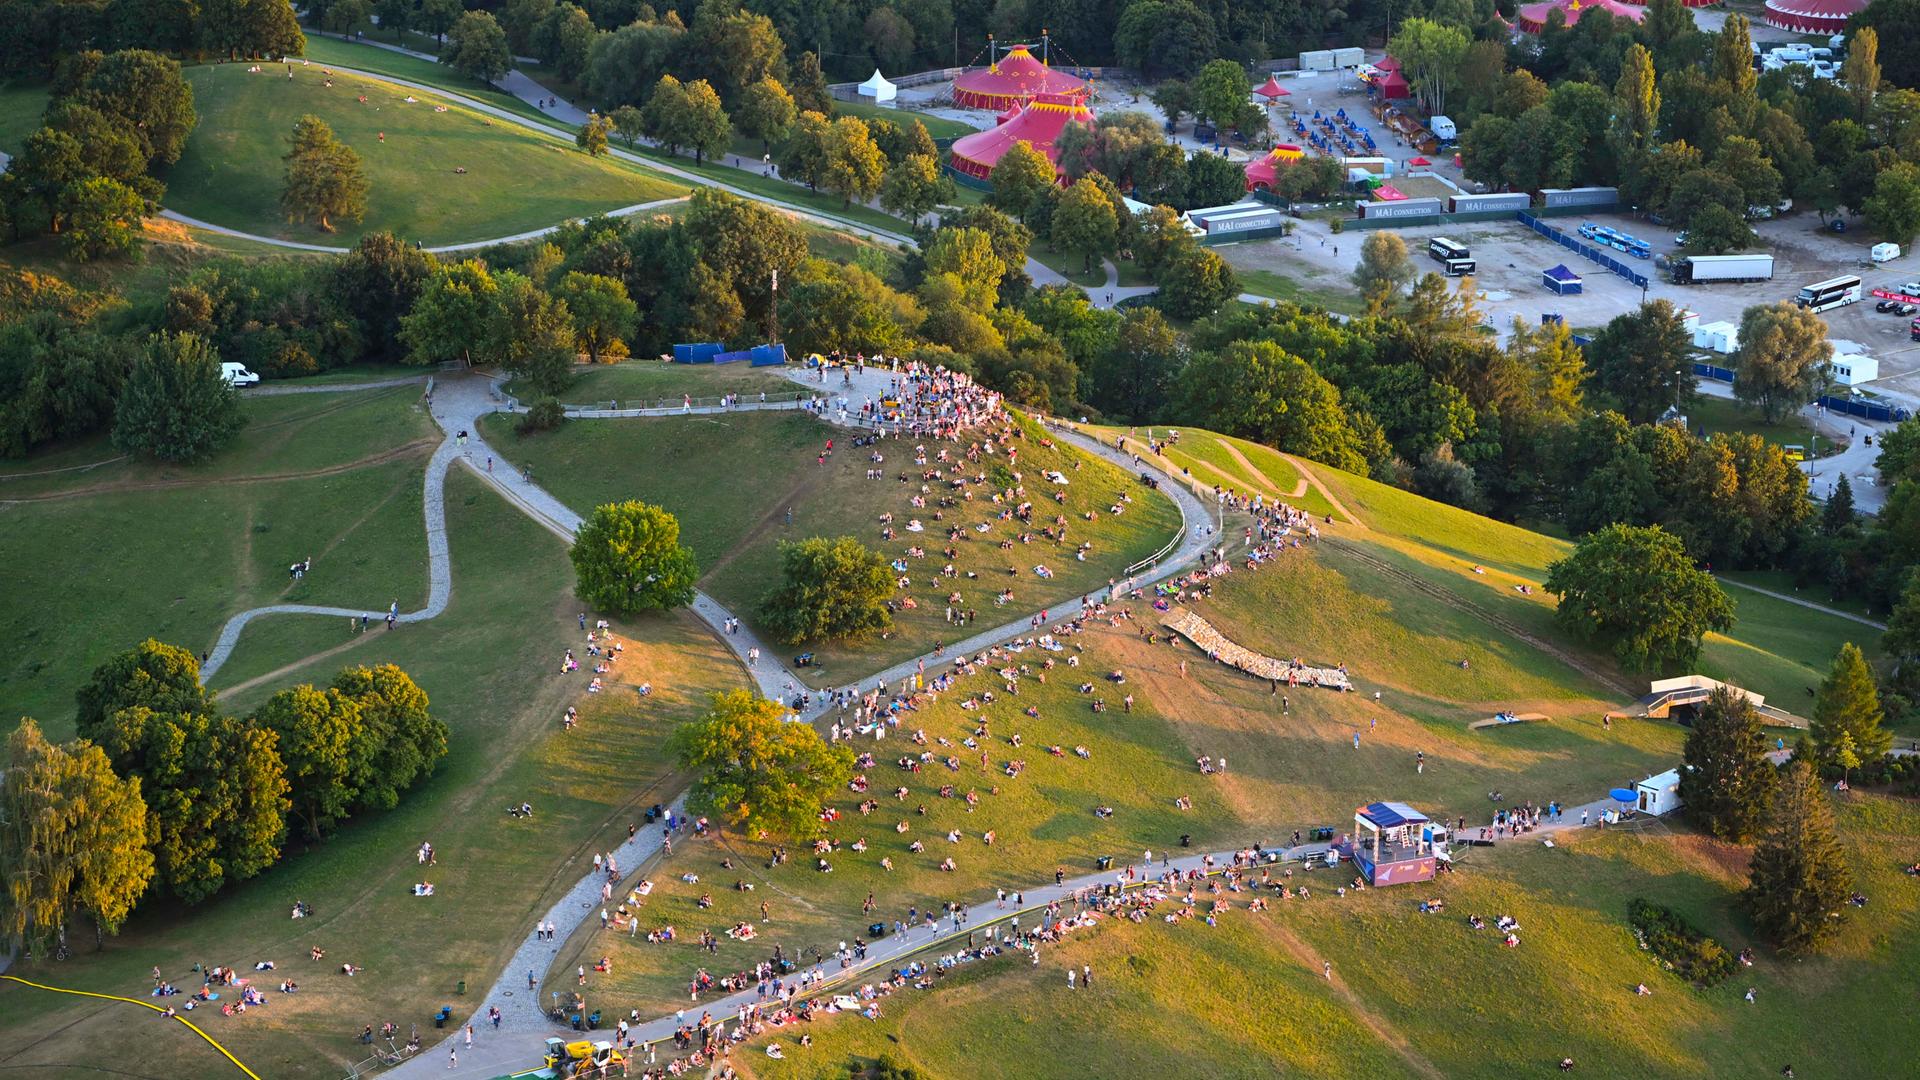 Grüne Hügel mit Menschen darauf: Blick auf den Olympiapark München.